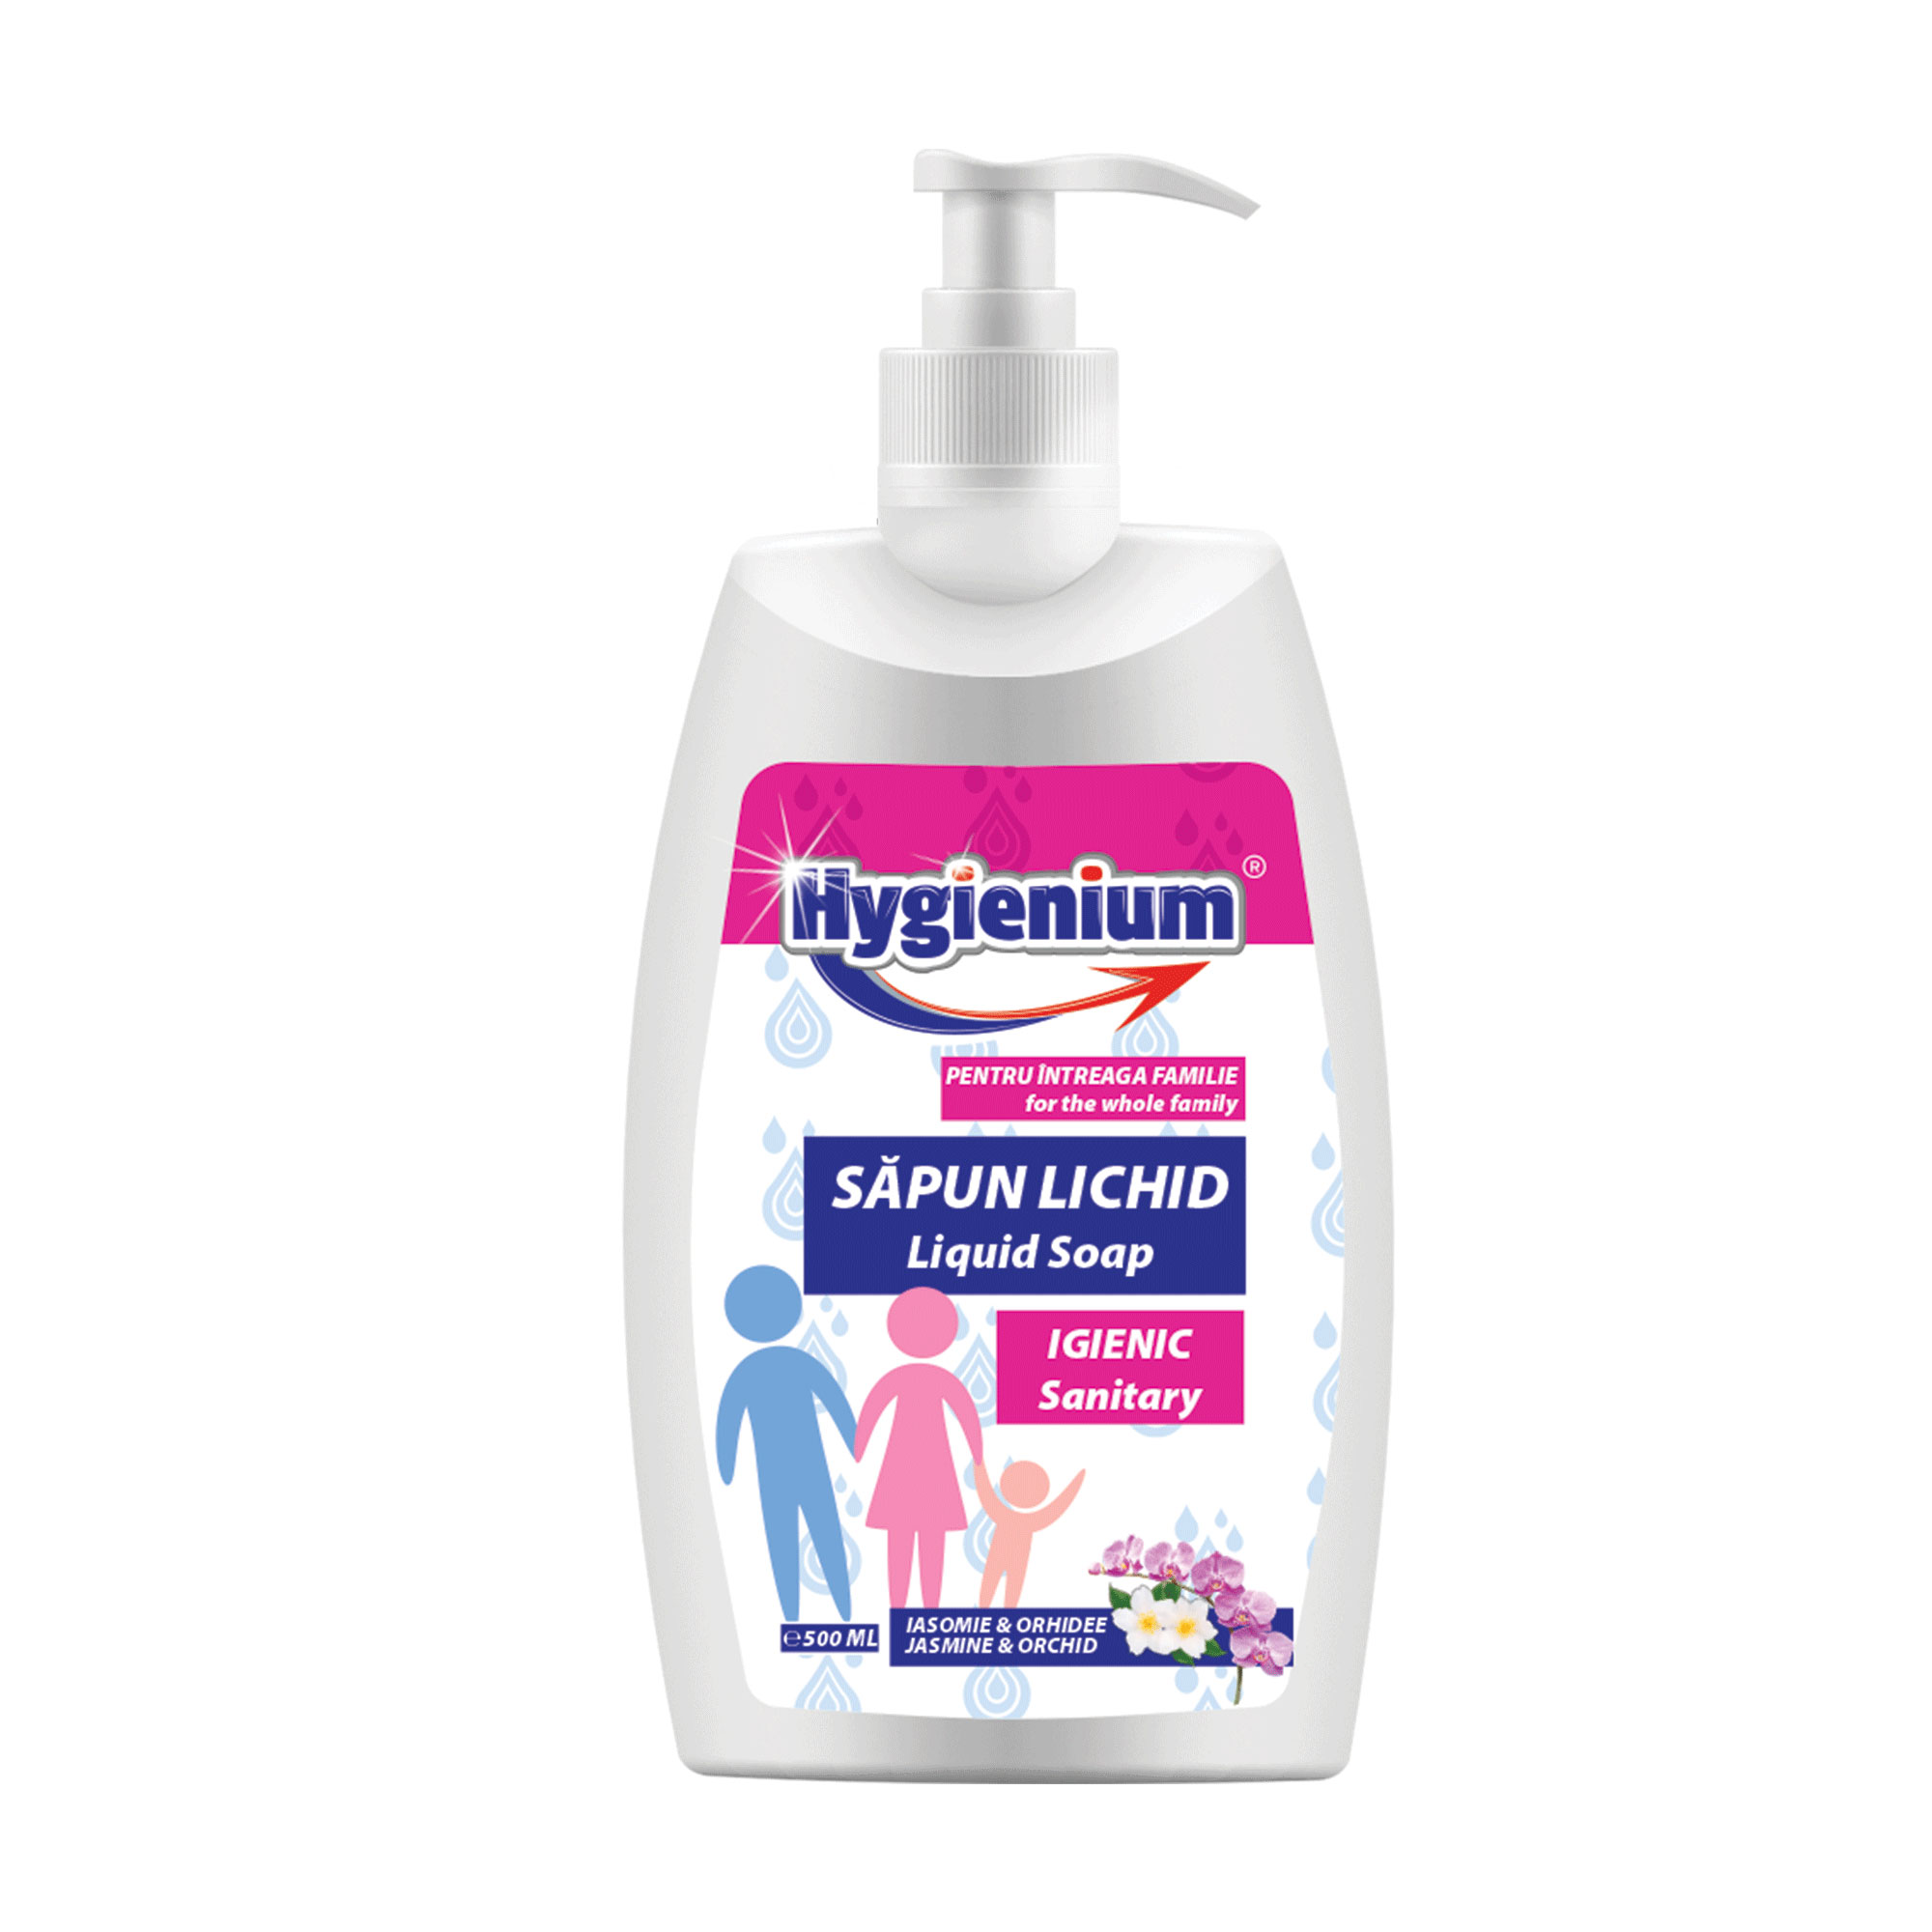 Hygienium Liquid Soap Jasmine & Orchid